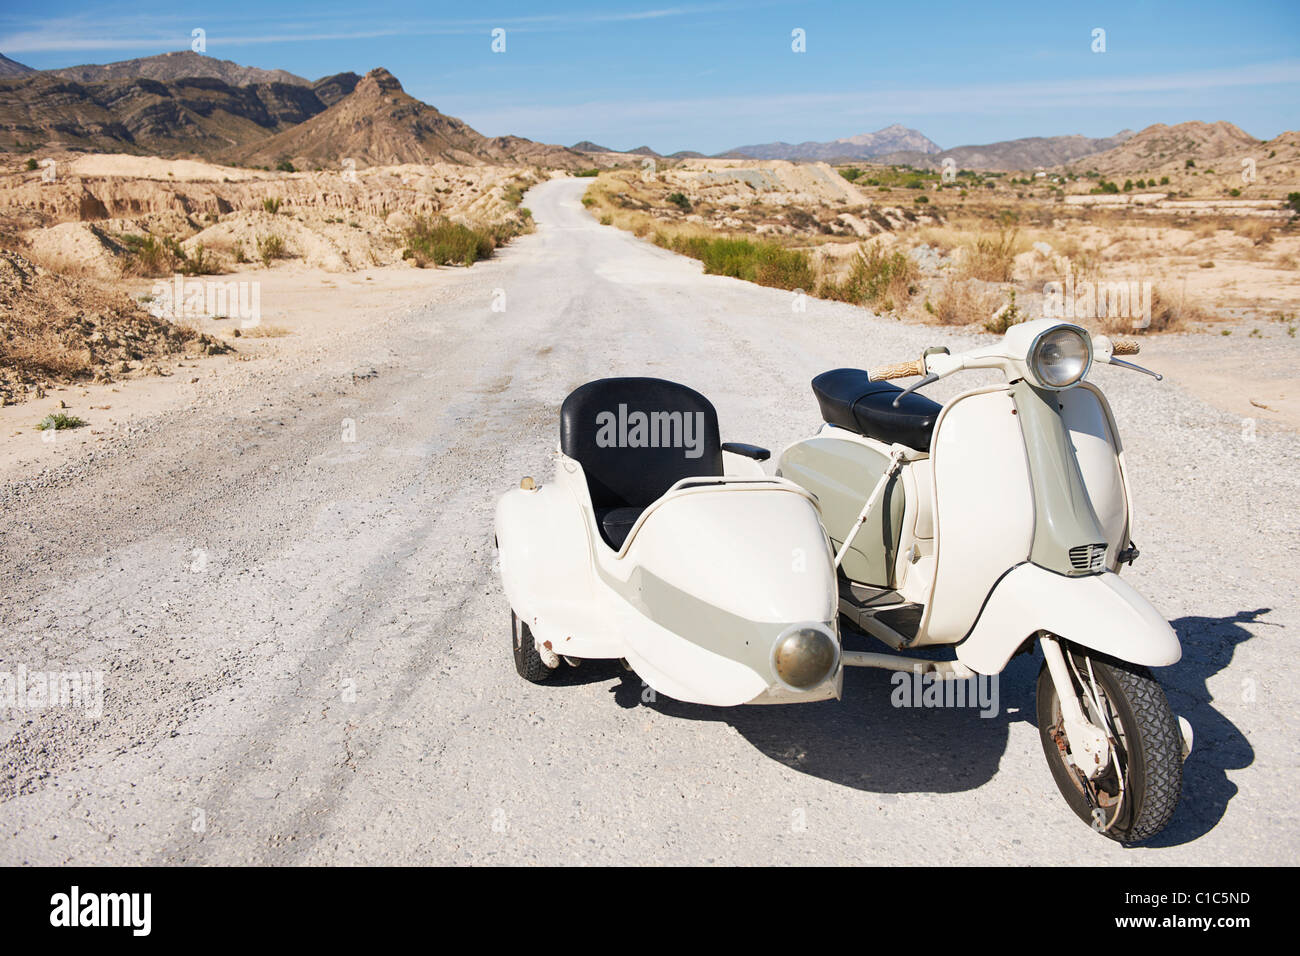 Moto et side-car sur la route Banque D'Images